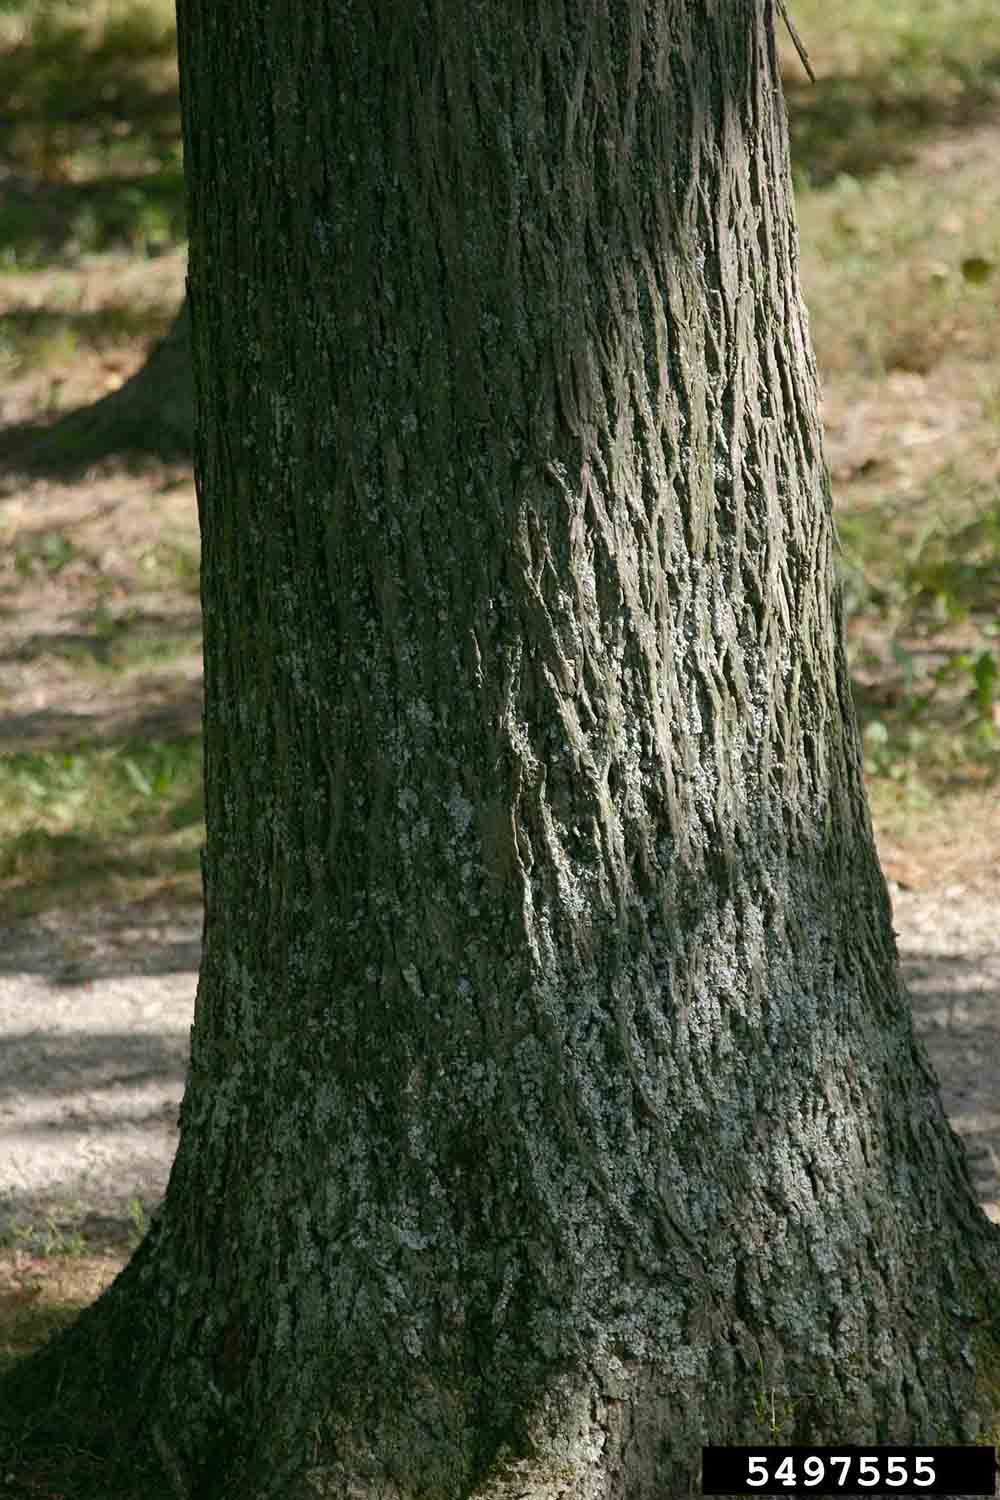 Shellbark hickory bark at base of tree